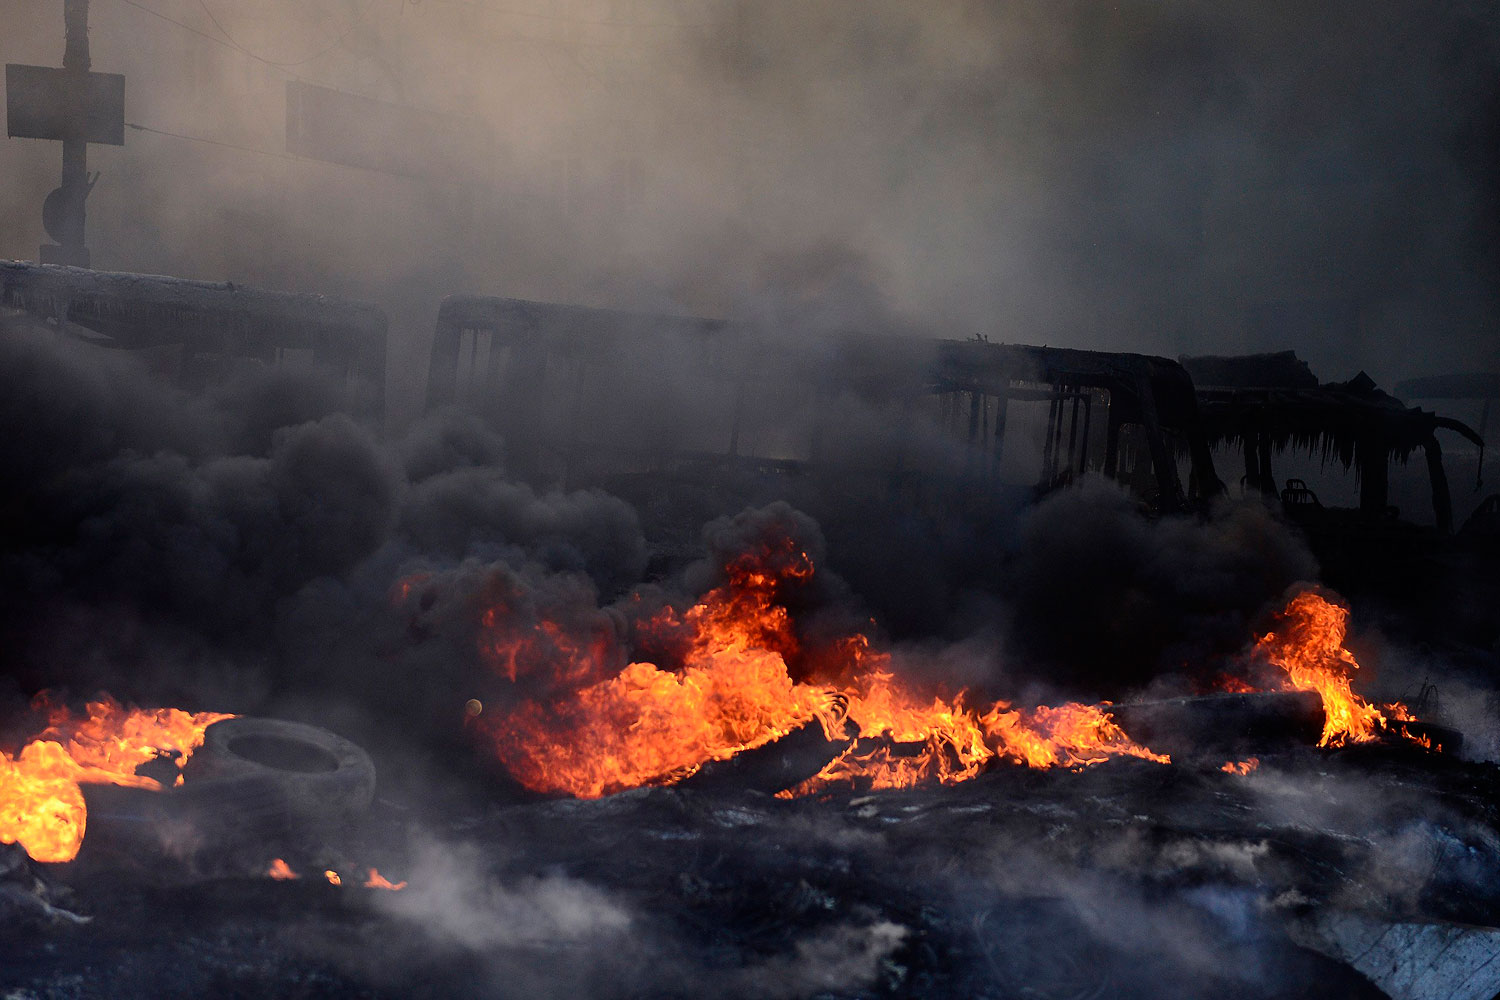 Burning tires in Kiev, Jan. 23, 2014.